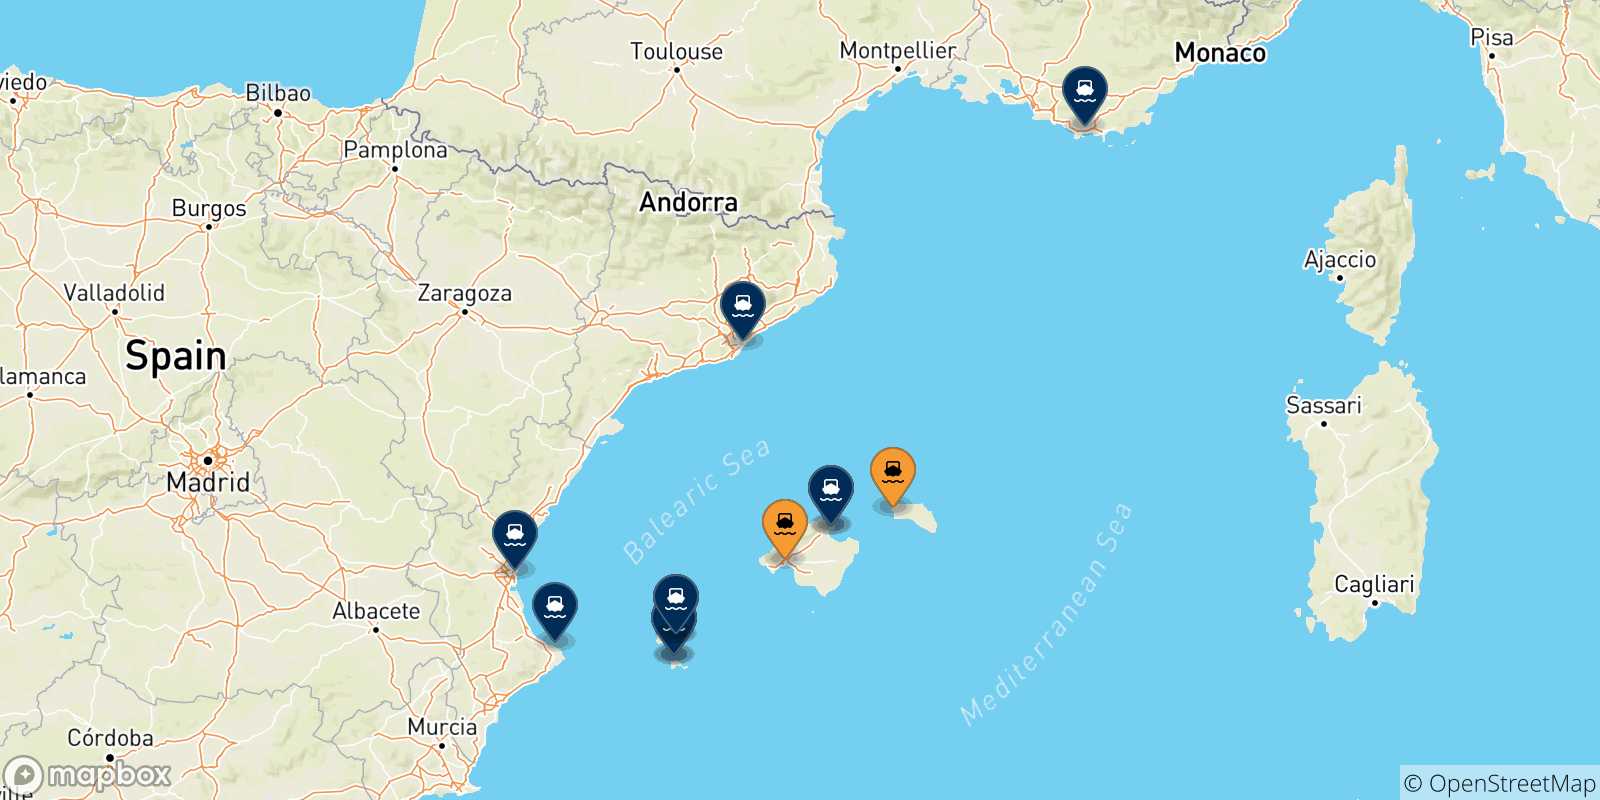 Mappa delle destinazioni raggiungibili dalle Isole Baleari